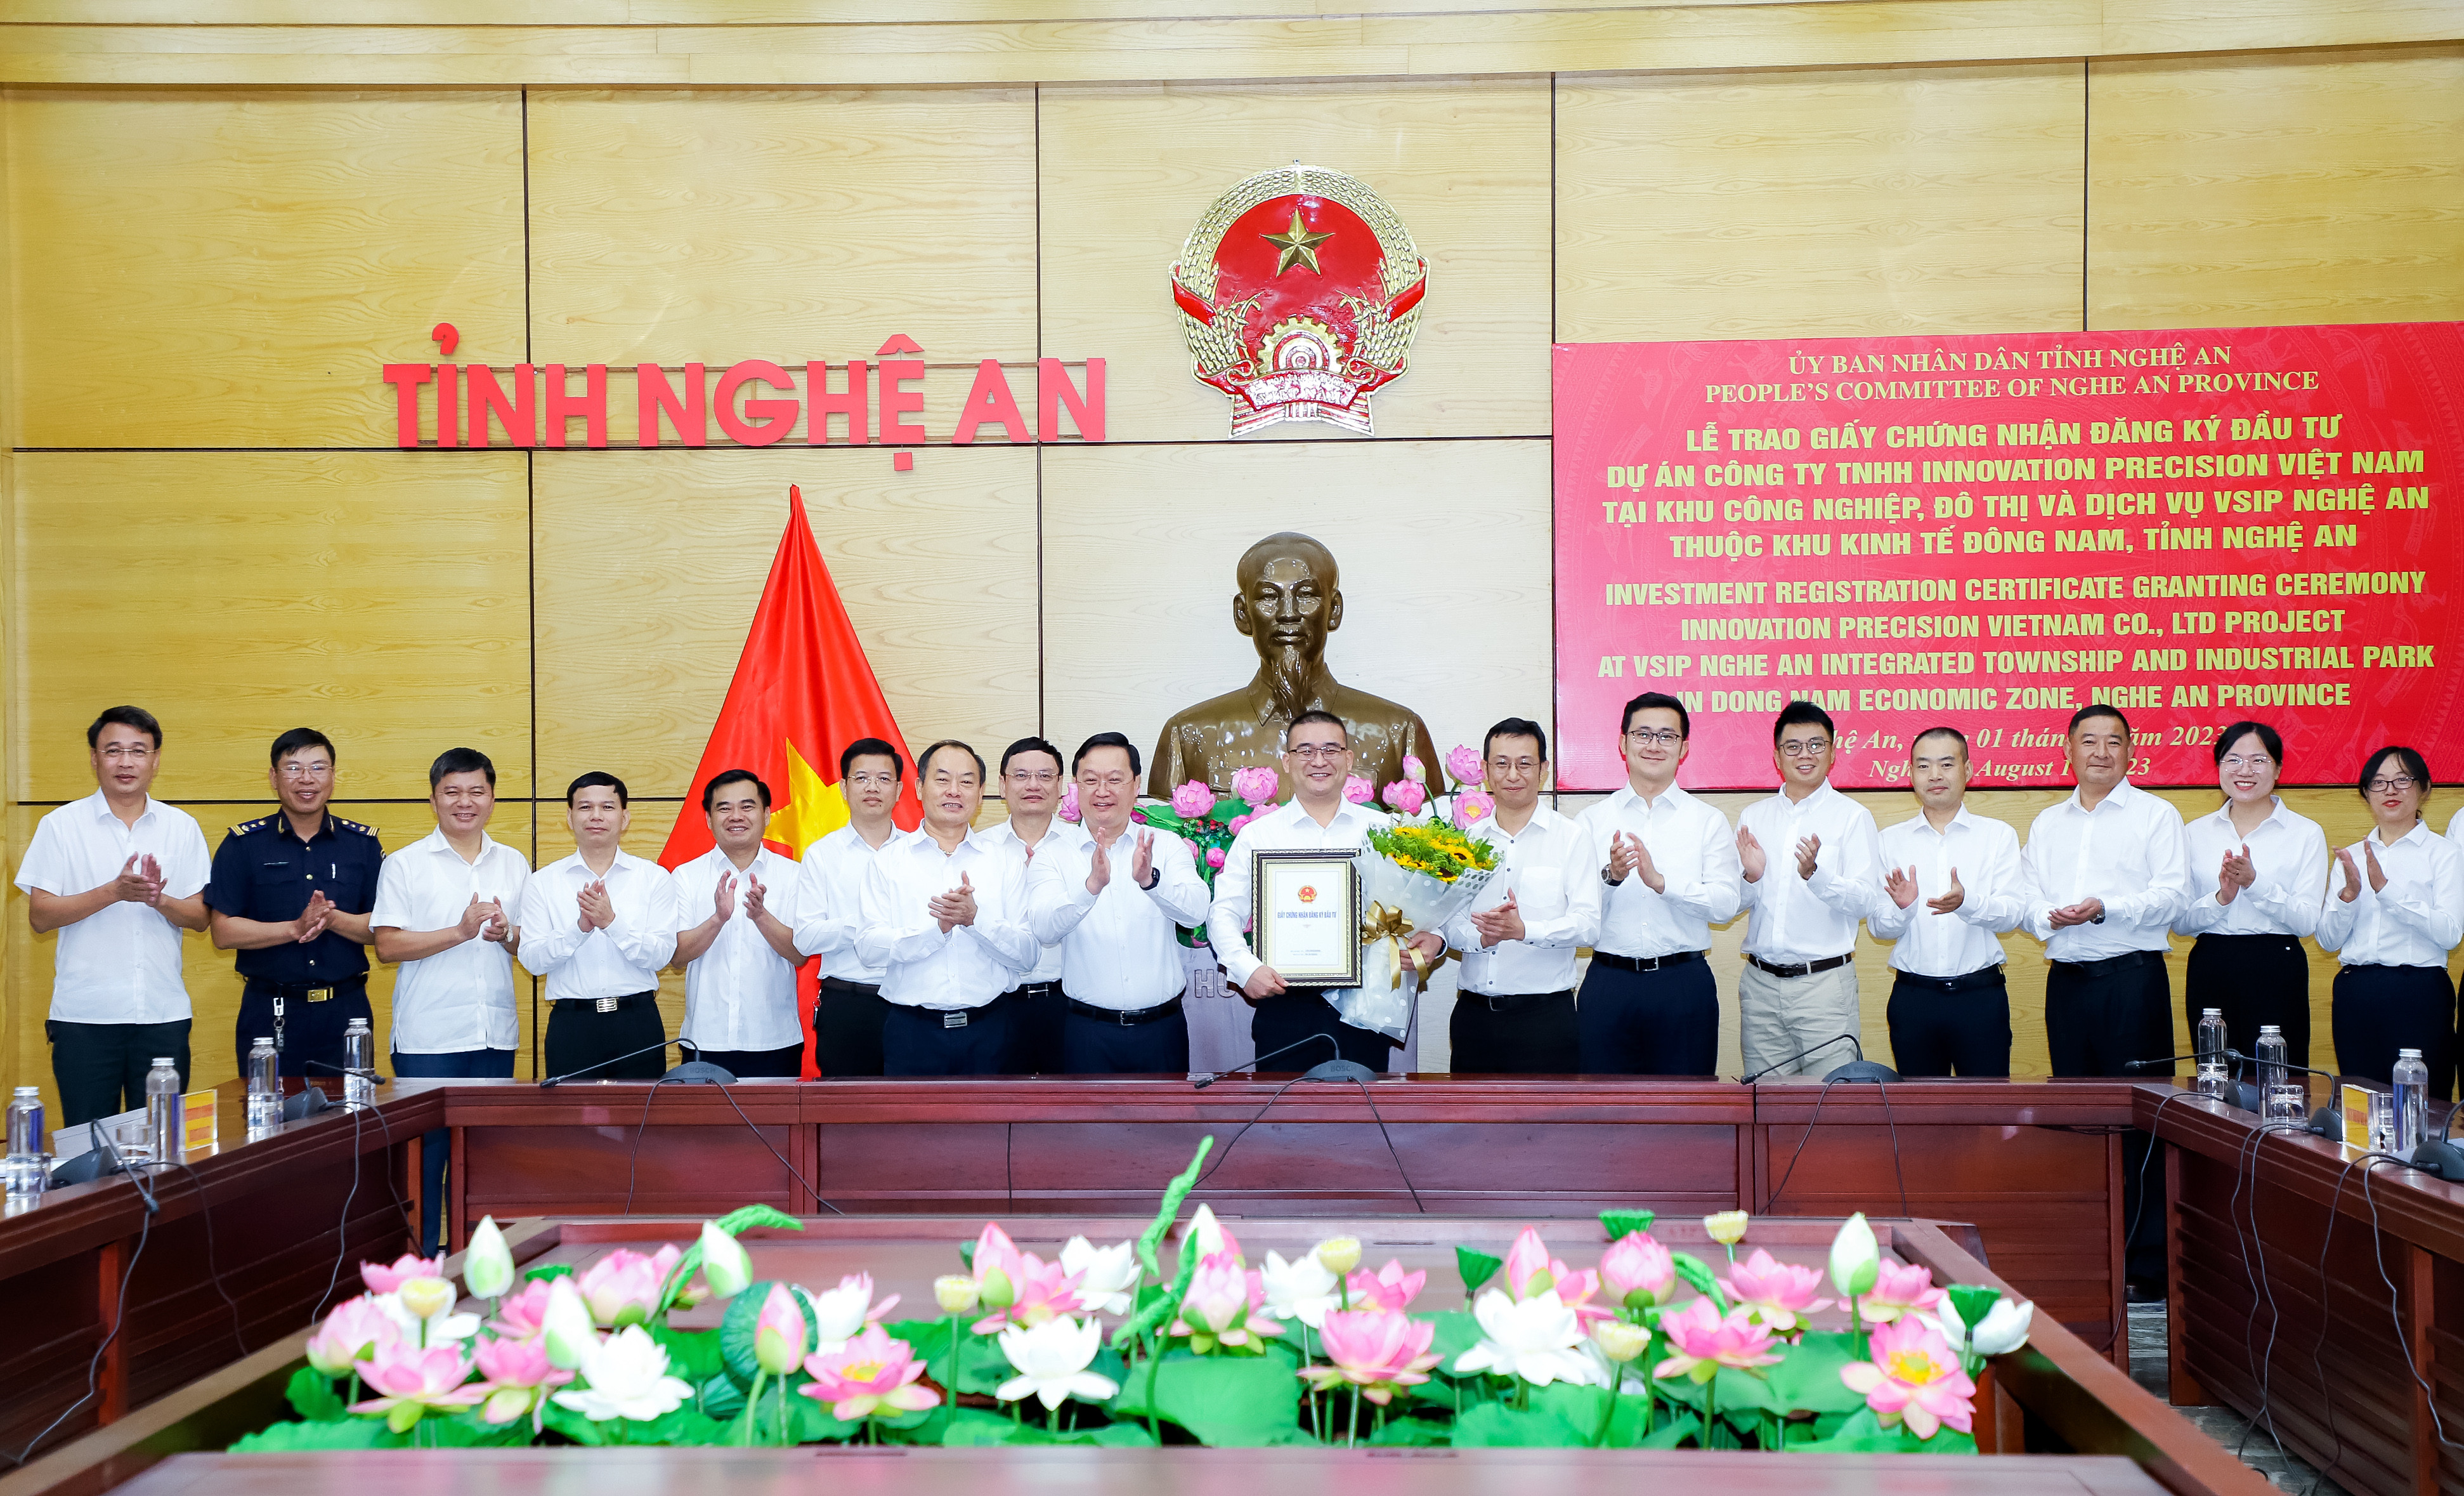 1. Chủ tịch UBND tỉnh Nguyễn Đức Trung trao giấy chứng nhân đăng ký đầu tư, tặng hoa cho Tập đoàn Shandong Innovation Metal Technology.jpg.jpg